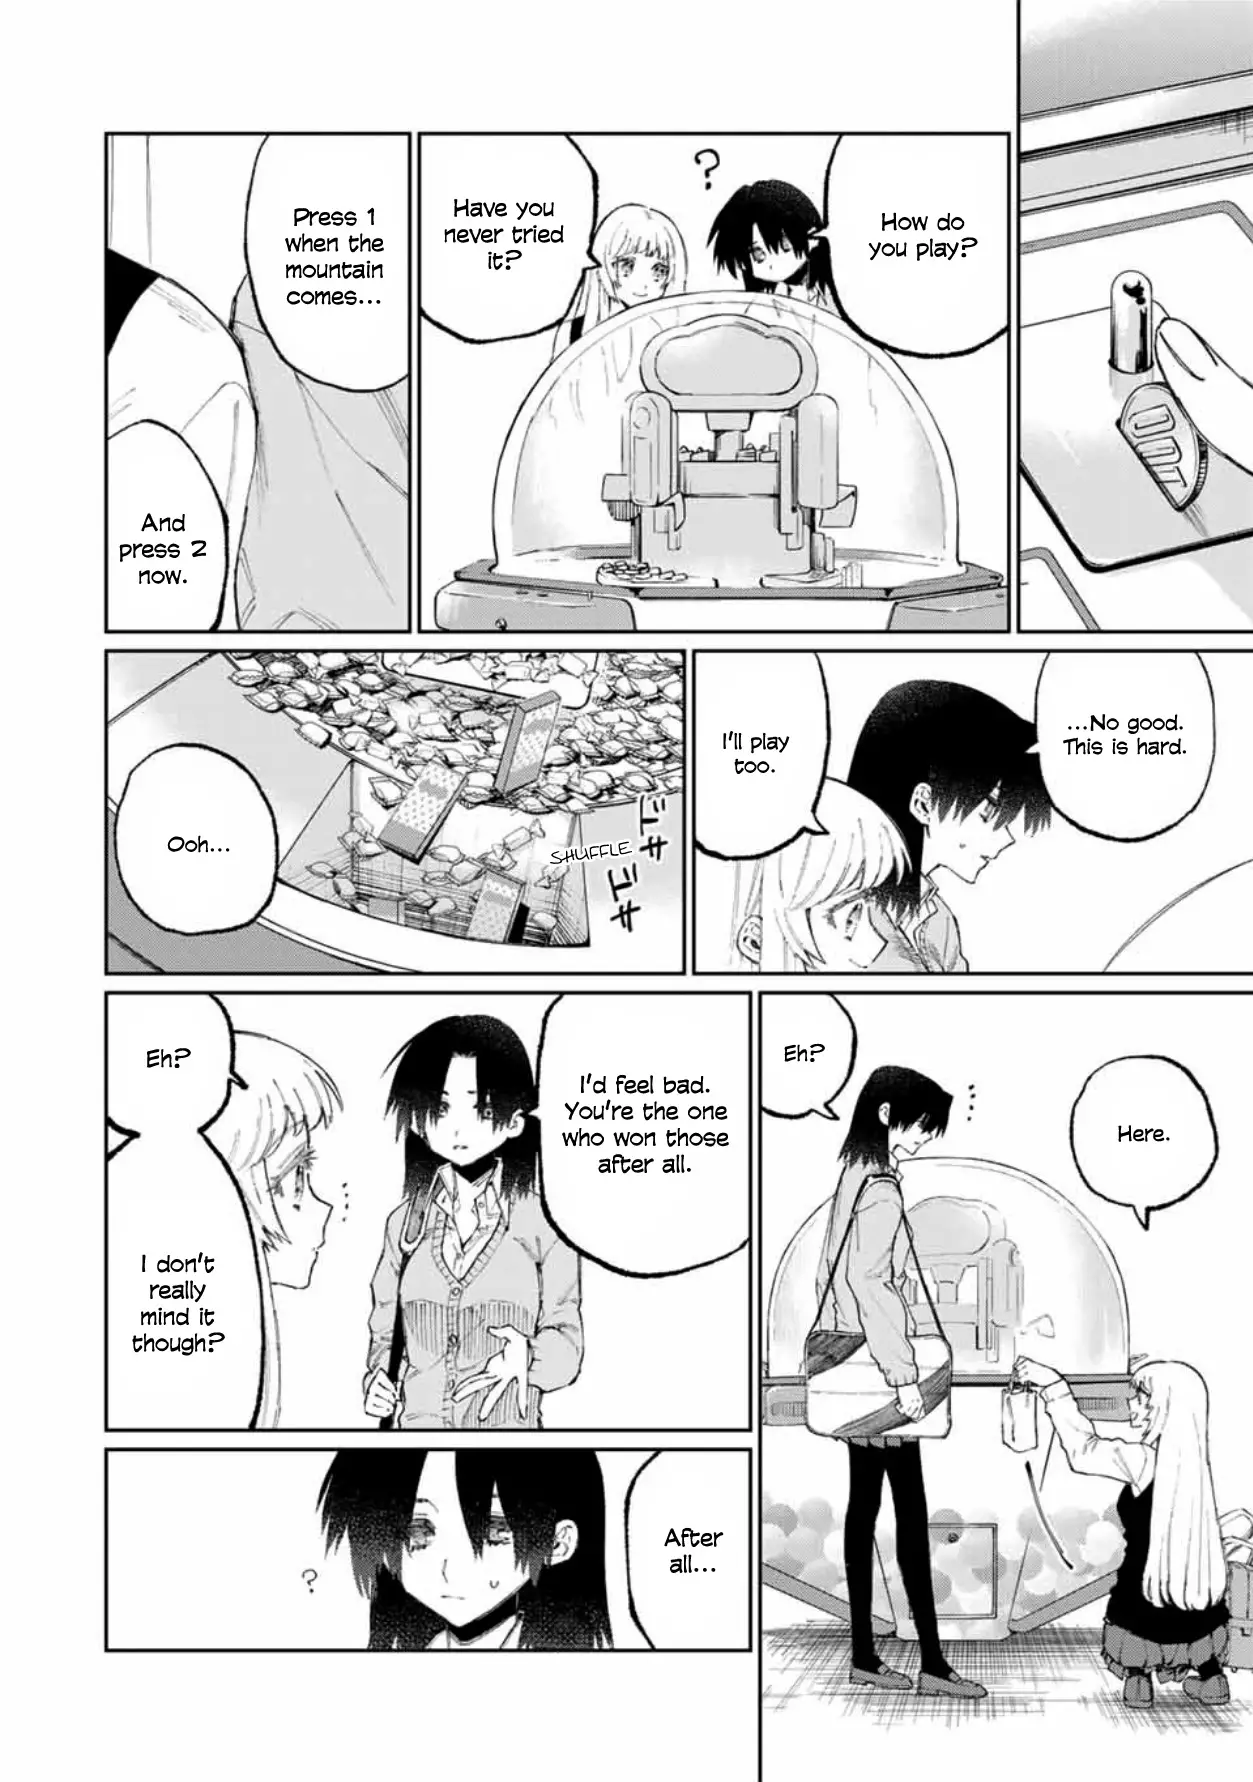 Shikimori's Not Just A Cutie - 47 page 7